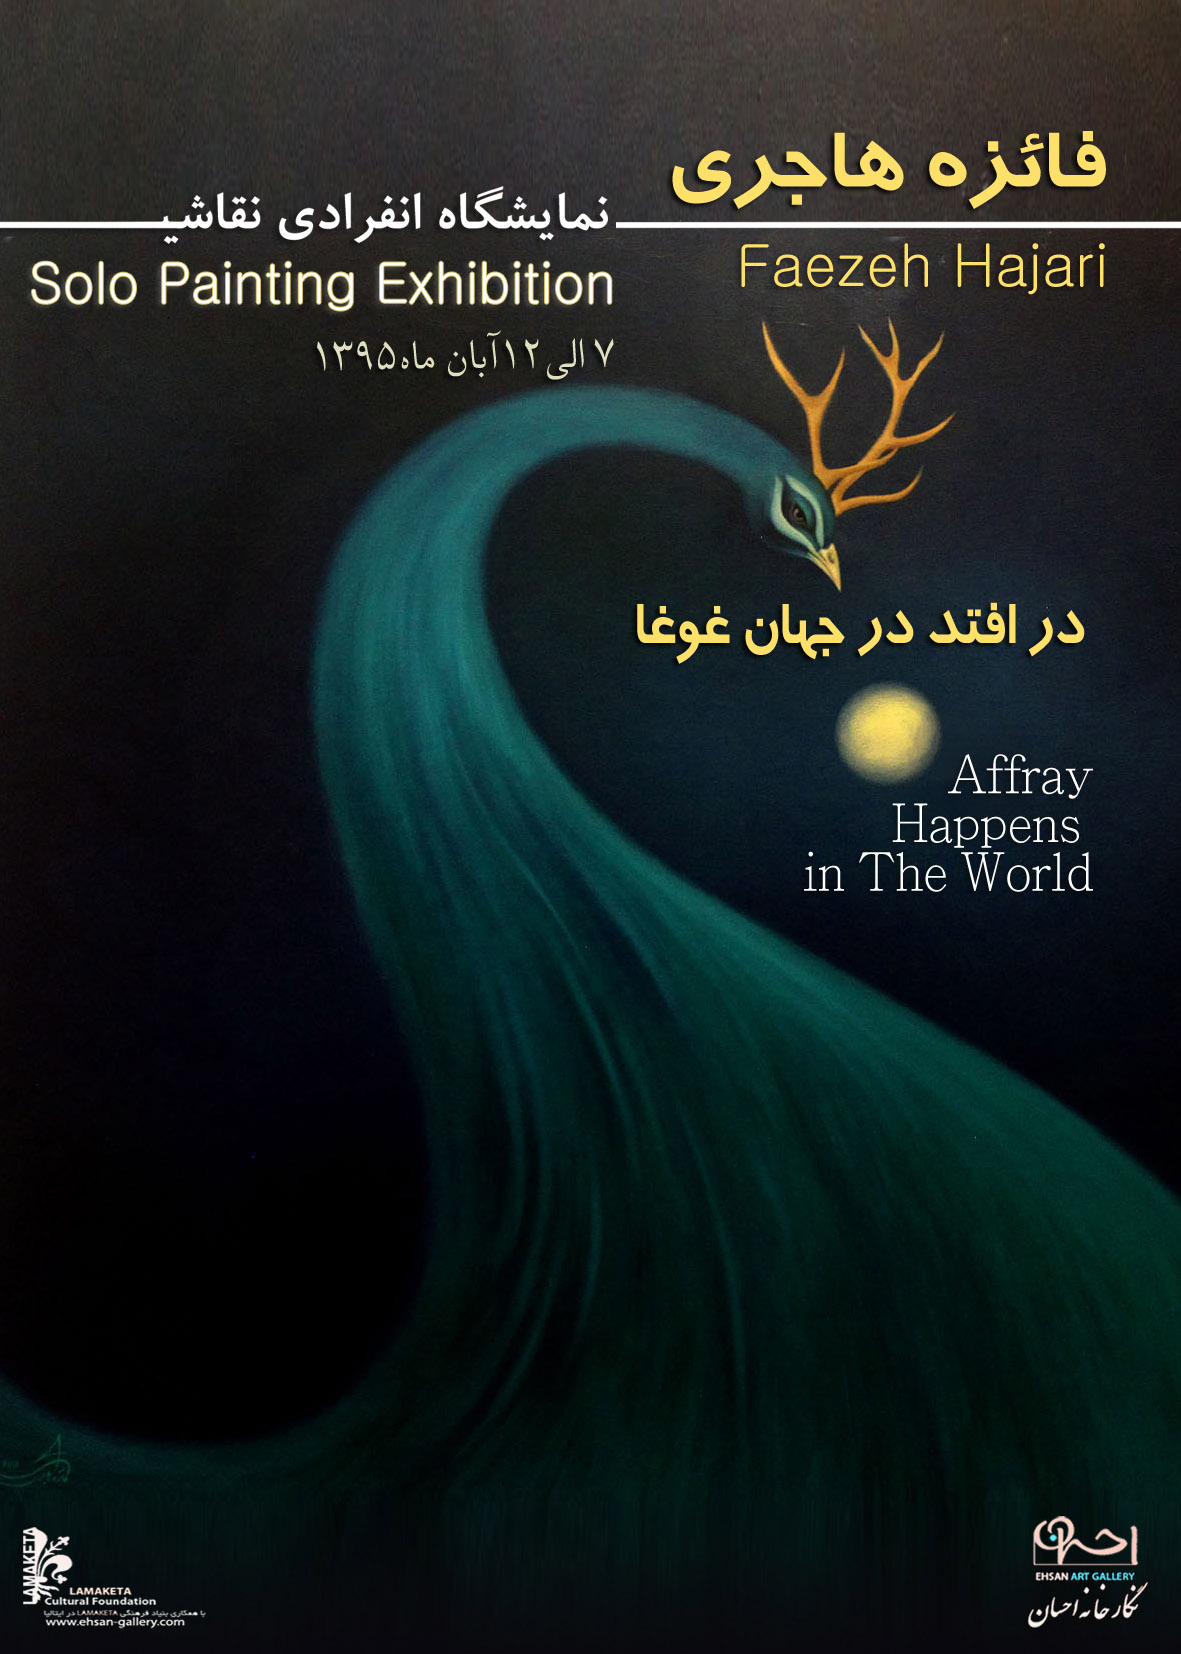 نمایش آثار فائزه هاجری در گالری احسان